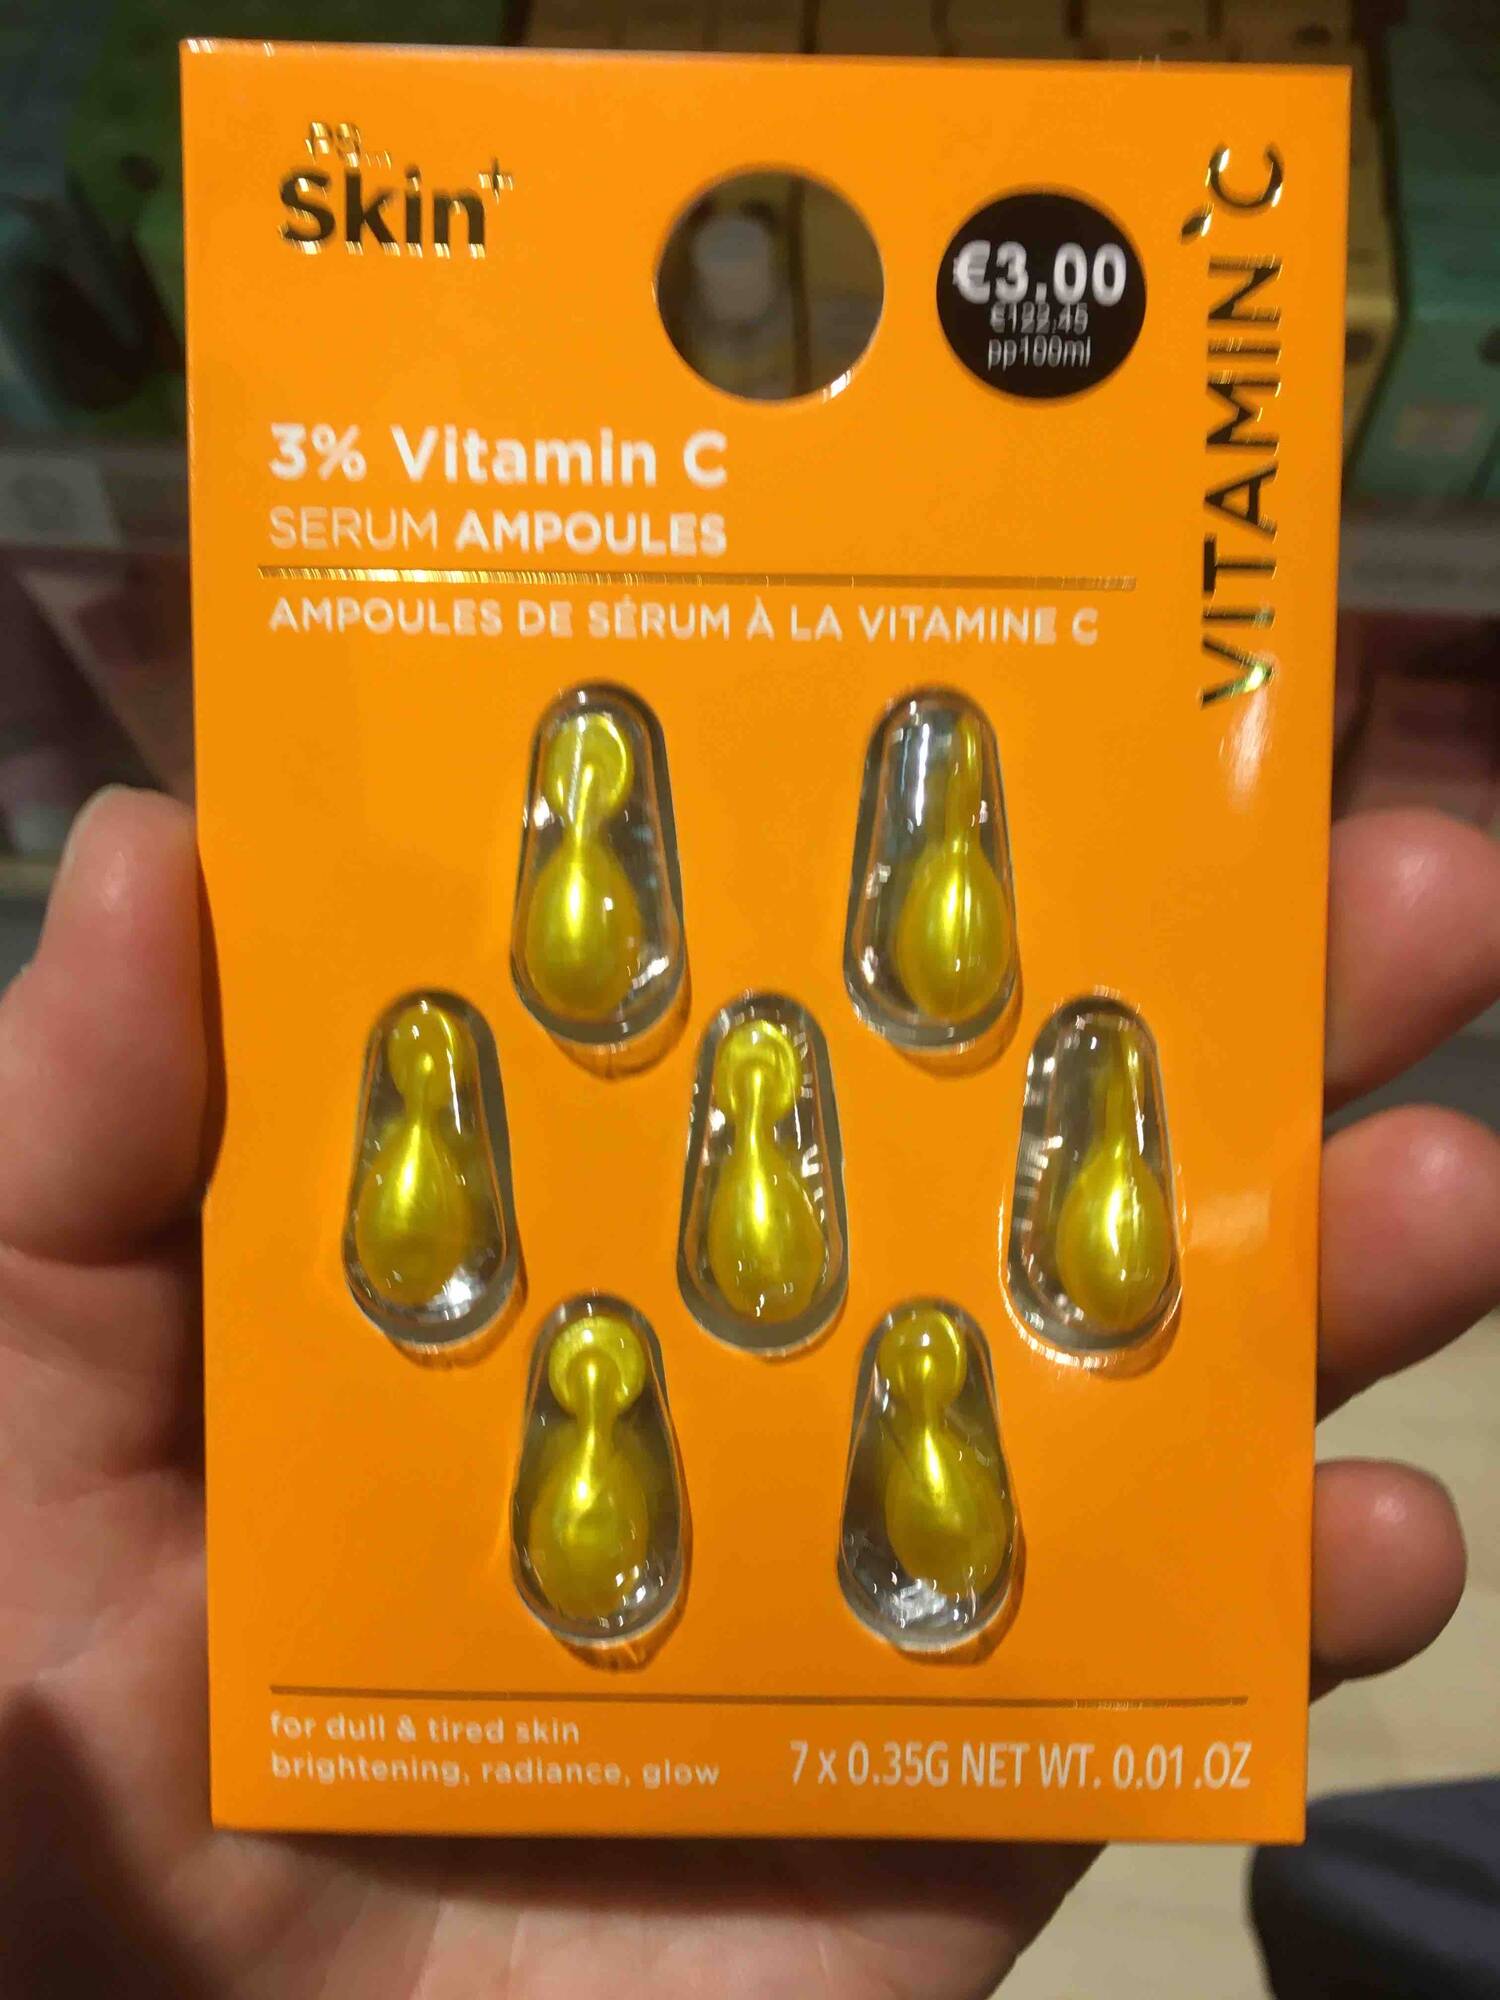 PRIMARK - Ampoules de sérum à la vitamine C